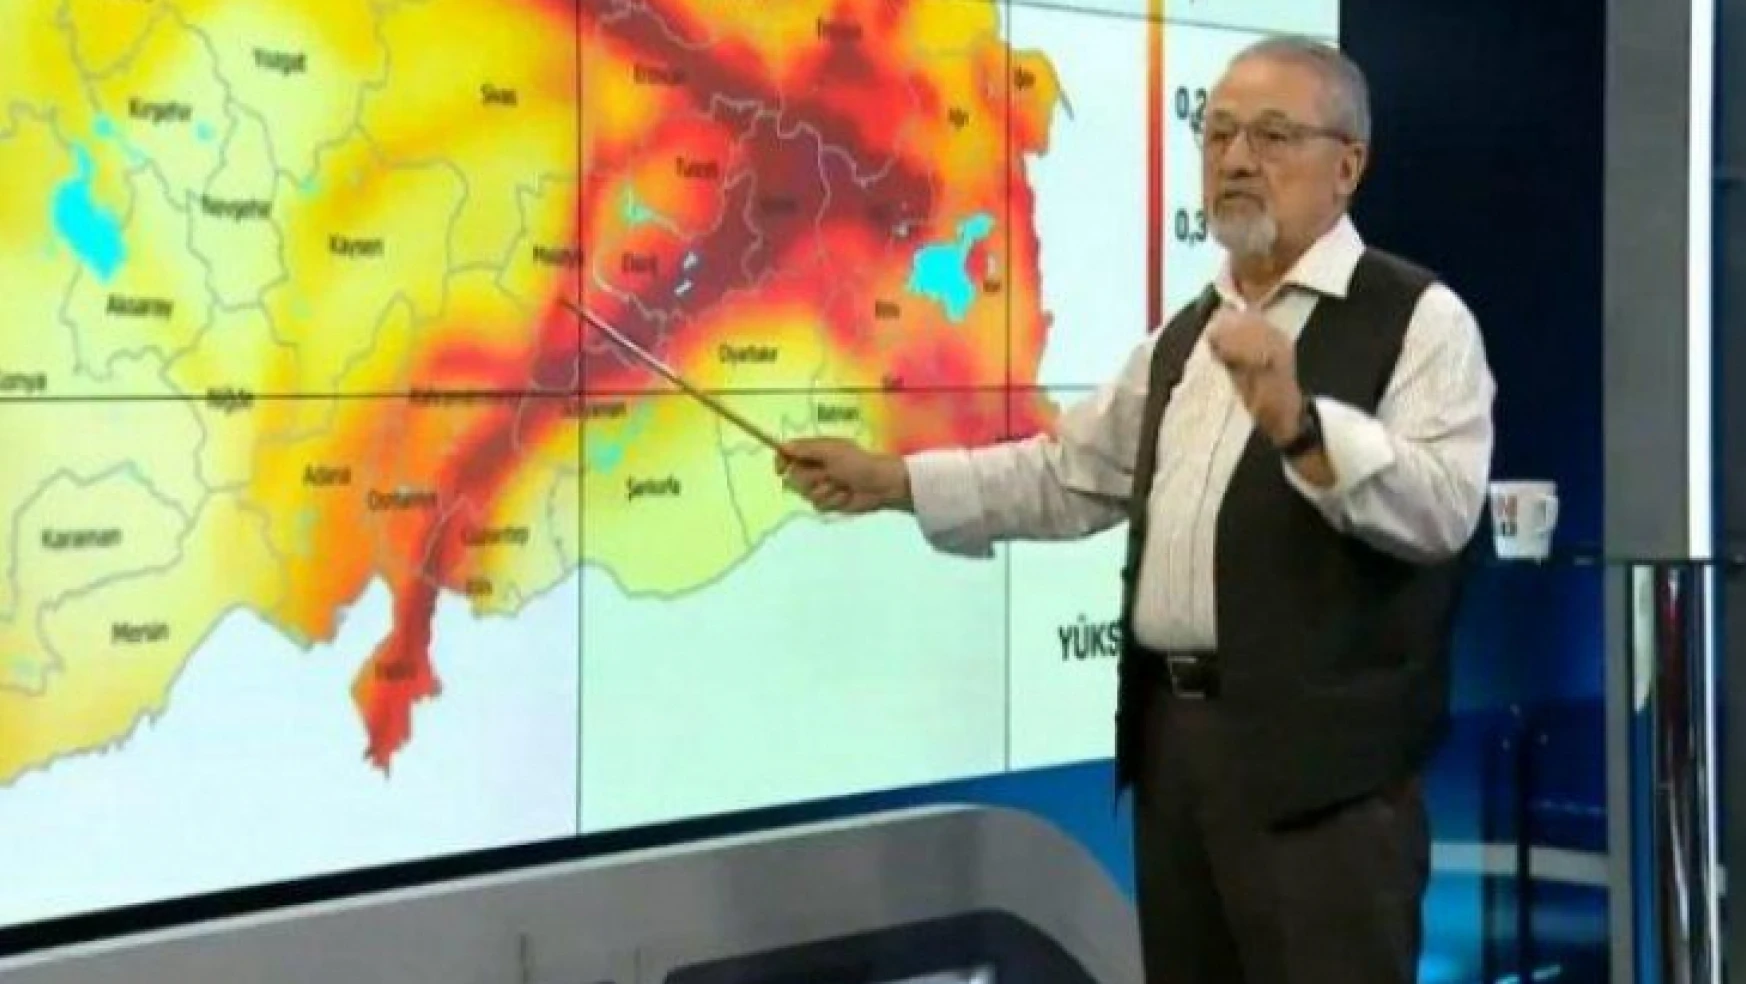 Deprem Uzmanı Prof. Dr. Naci Görür Elazığ Depremini Değerlendirdi: Endişeye Gerek Yok